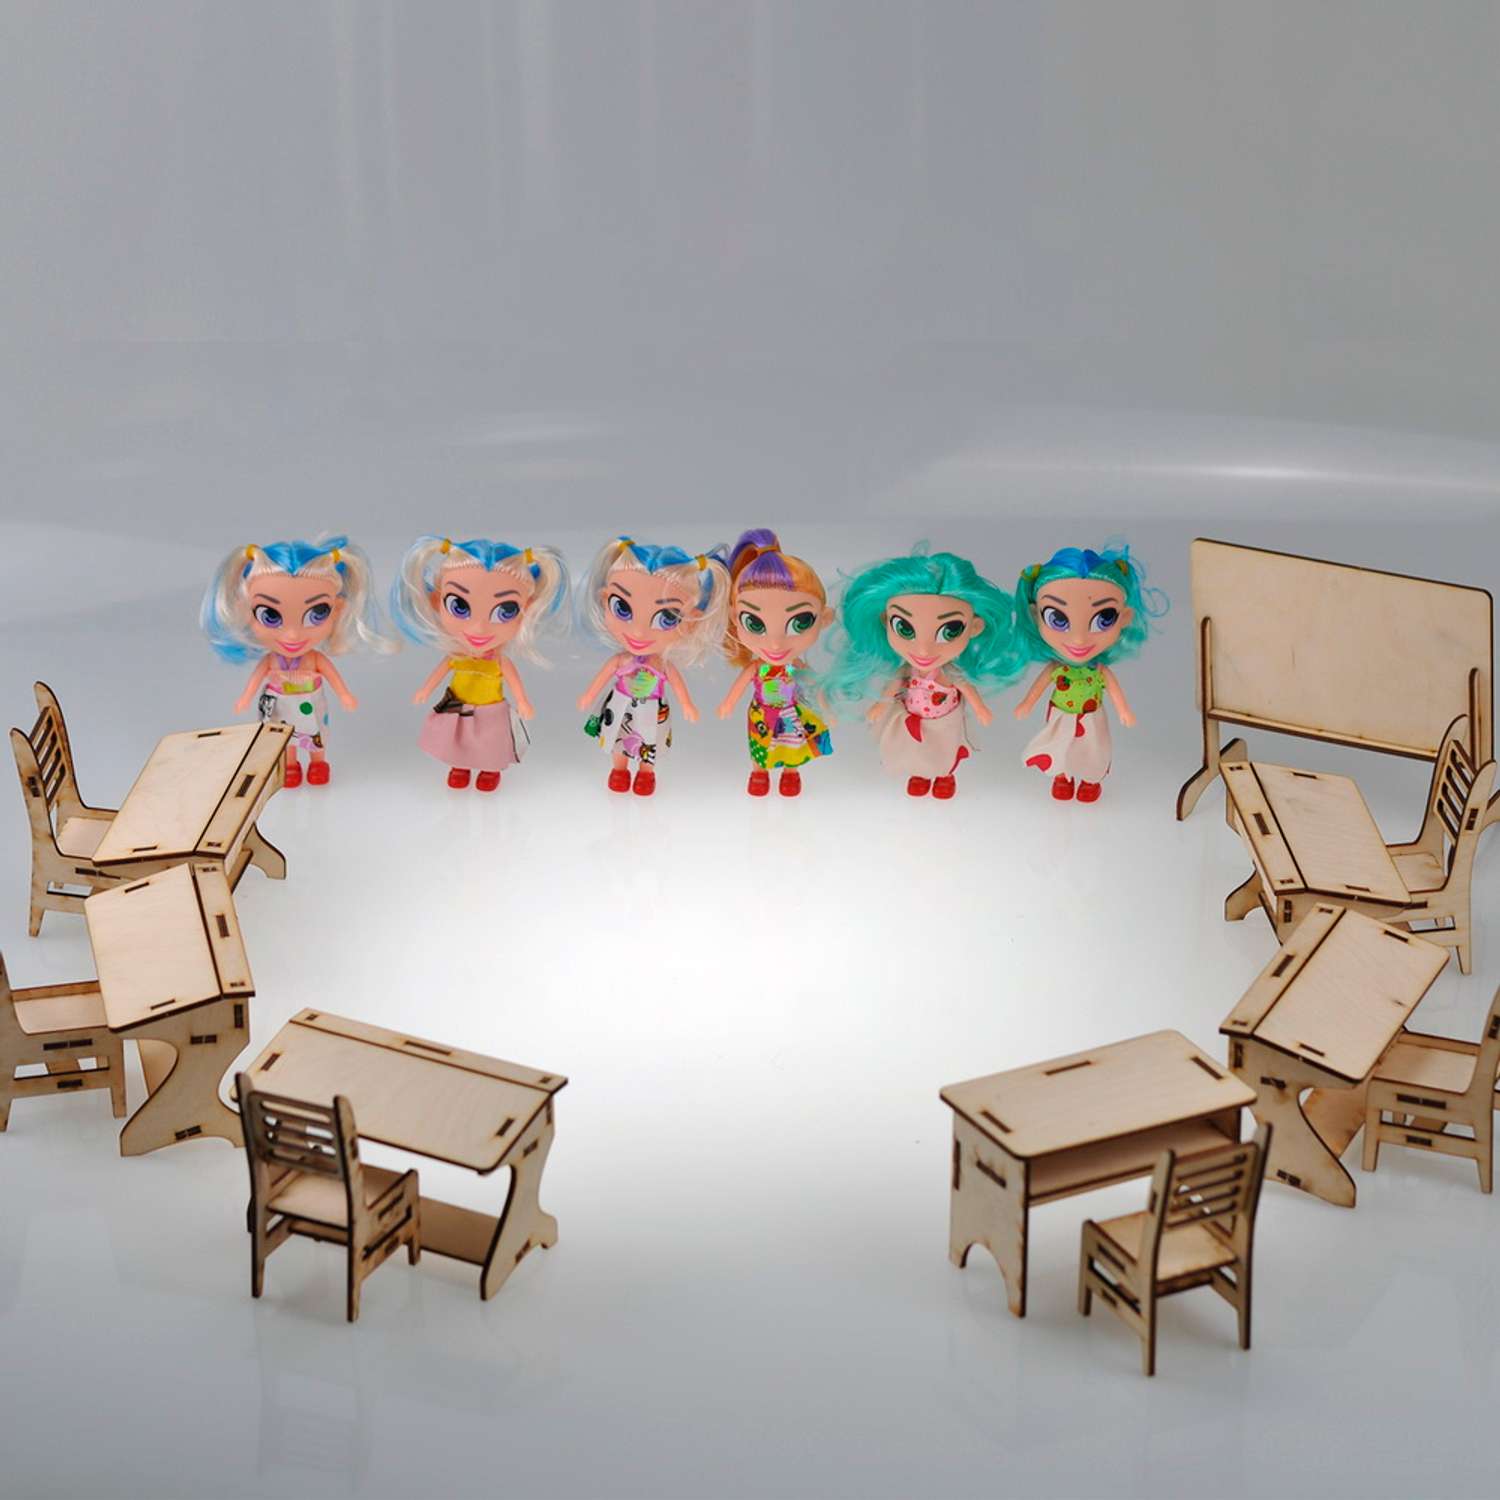 Игровой деревянный класс Amazwood 5 парт- учительский стол - доска - 6 стульев - 6 кукол AW1006 - фото 5